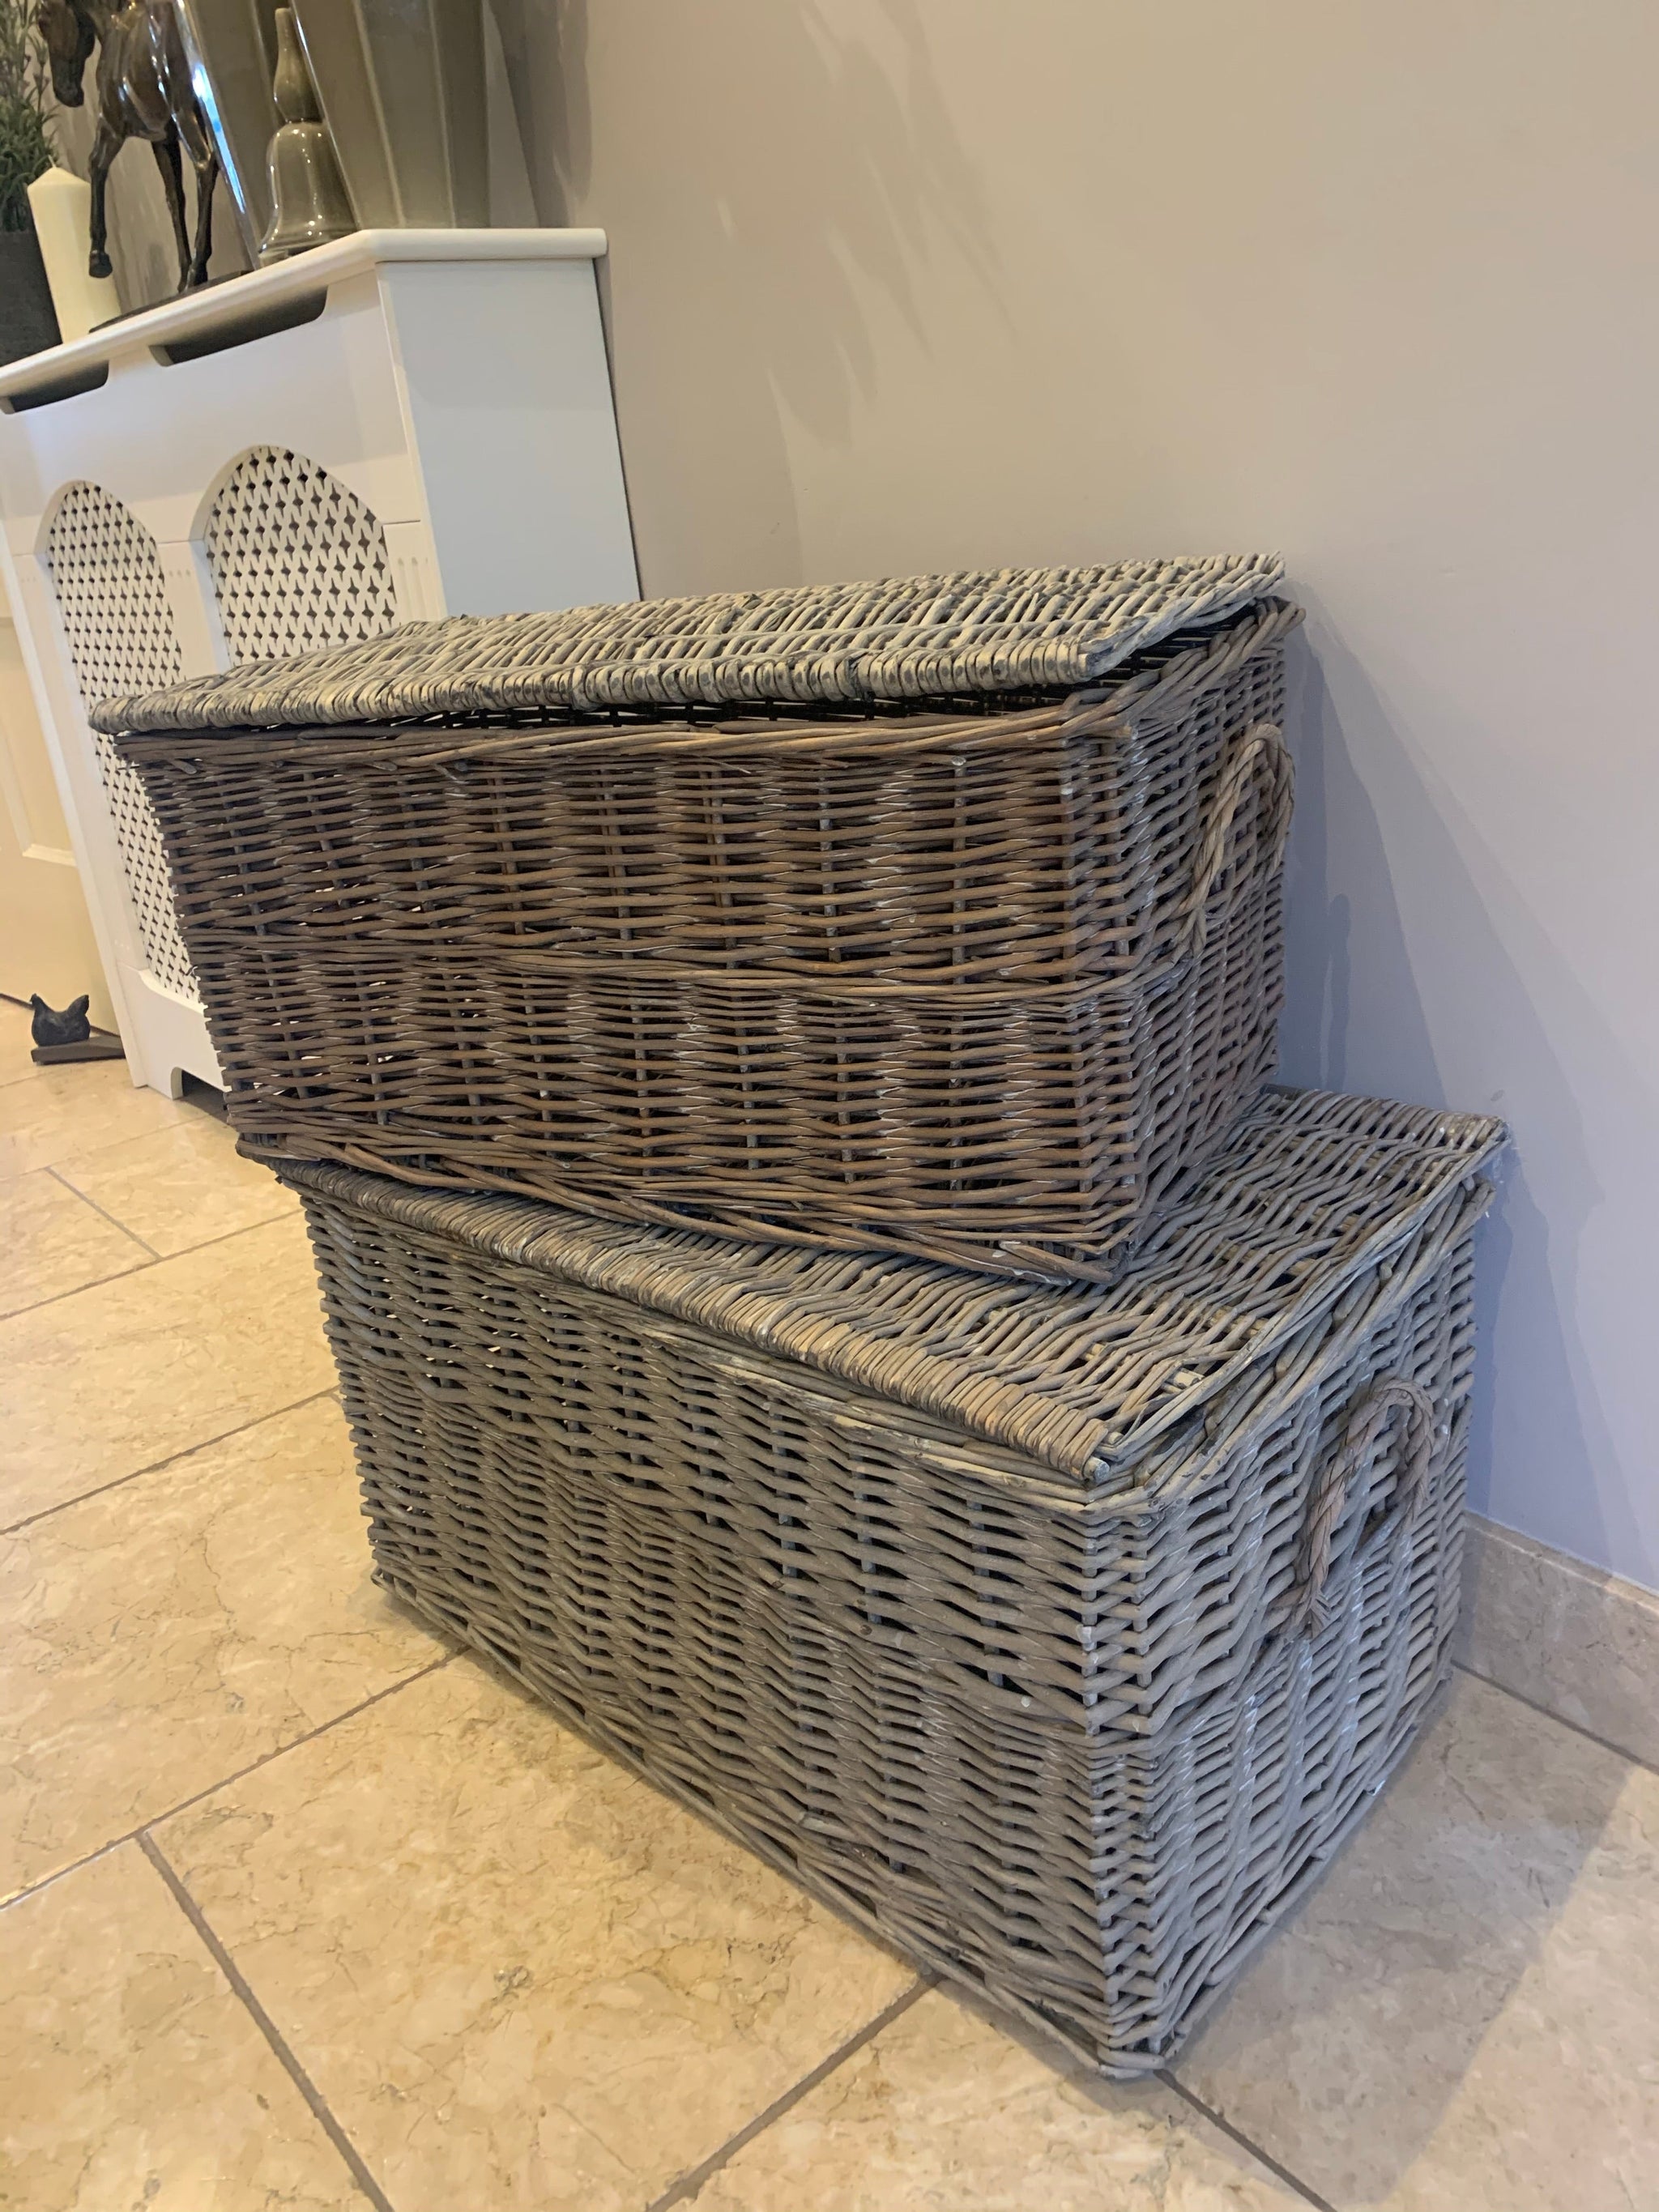 Full wicker baskets - 2 sizes